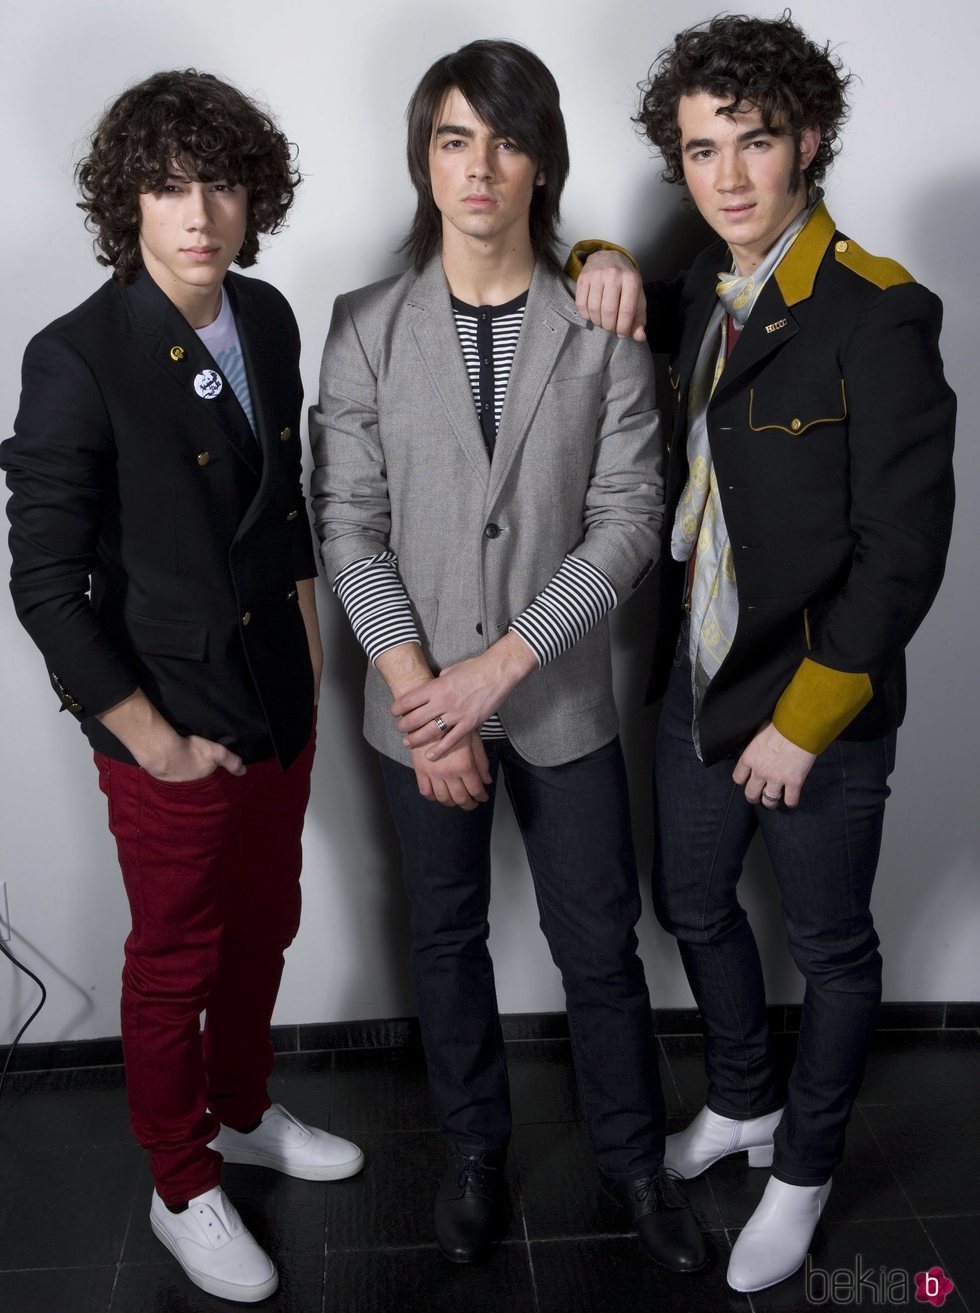 Los Jonas Brothers al inicio de su carrera